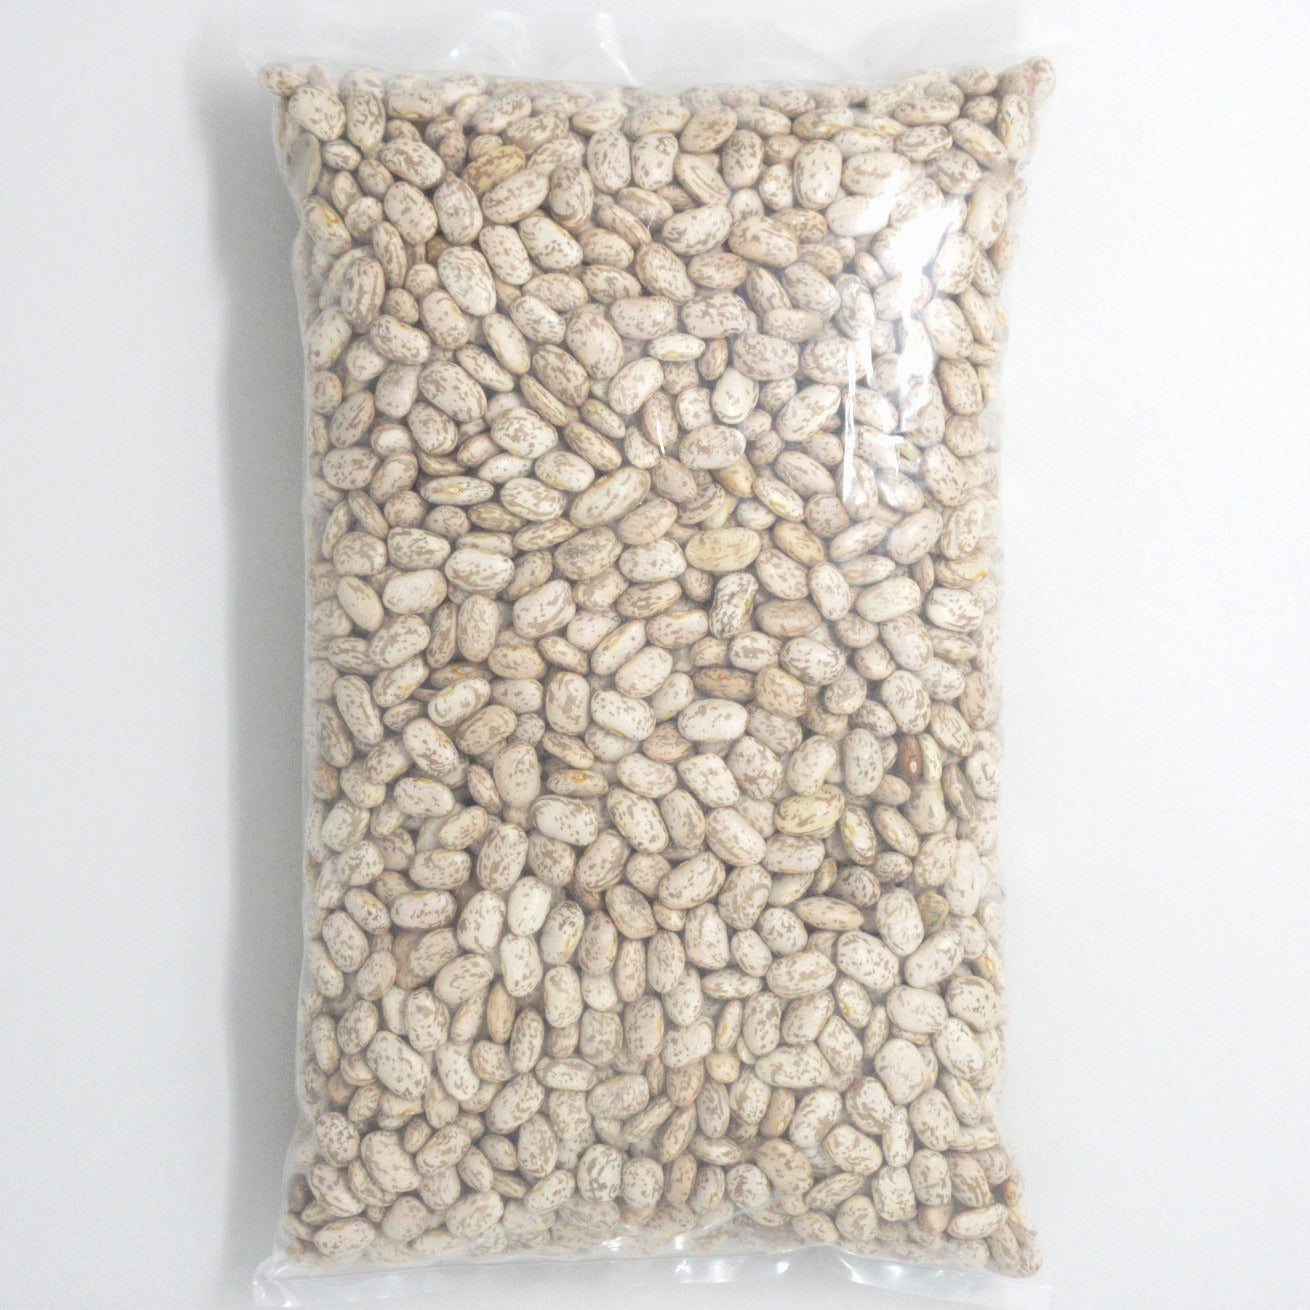 Flour Barrel product image - Pinto Beans